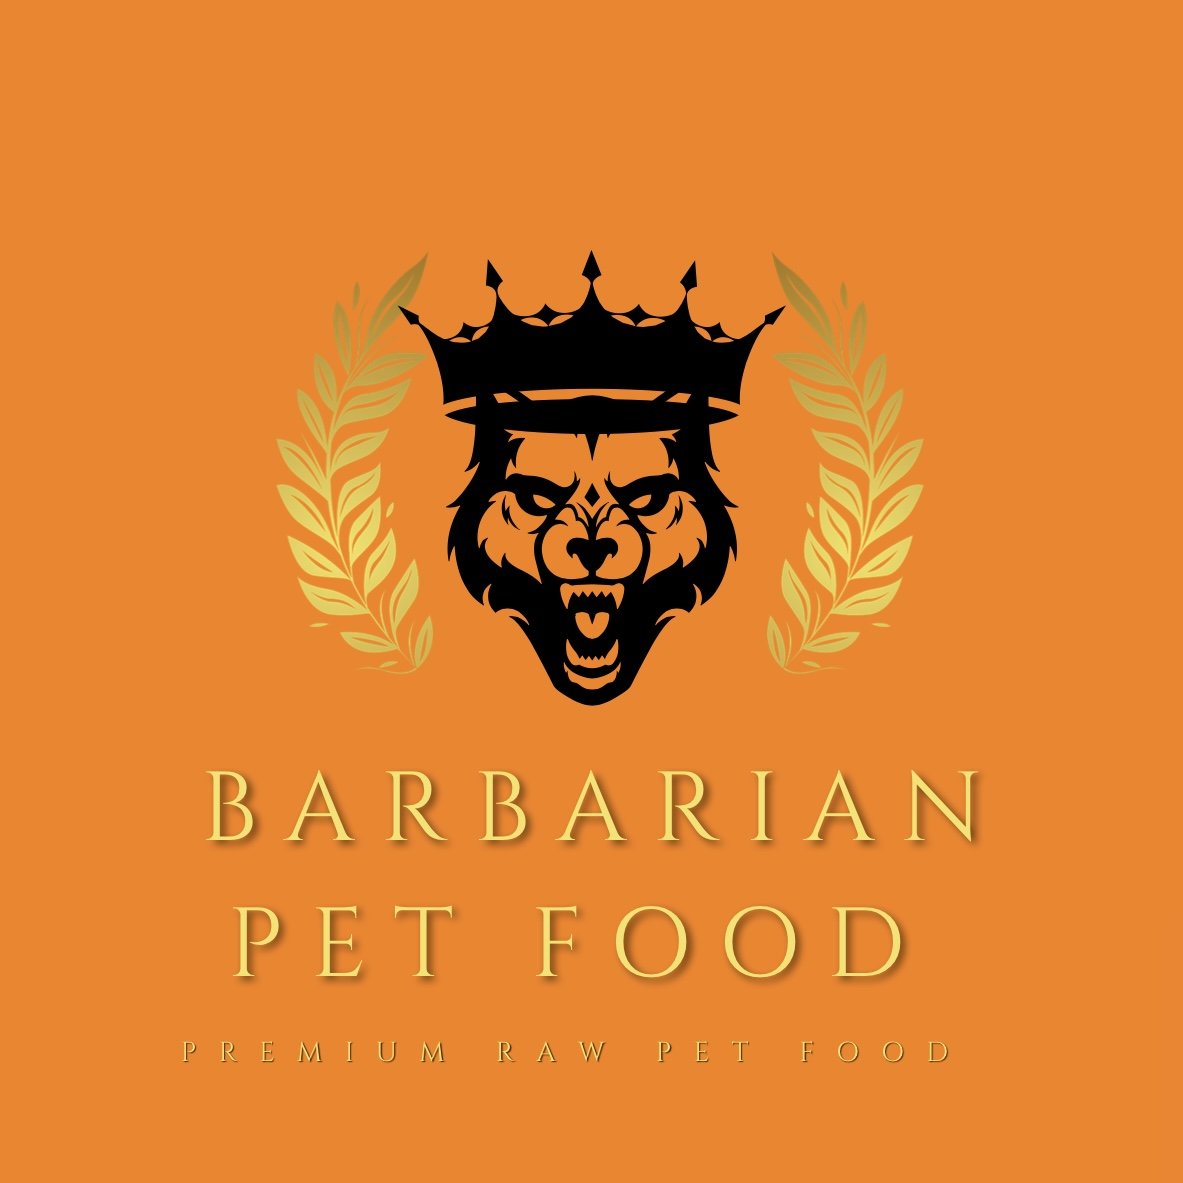 Barbarian Pet Food